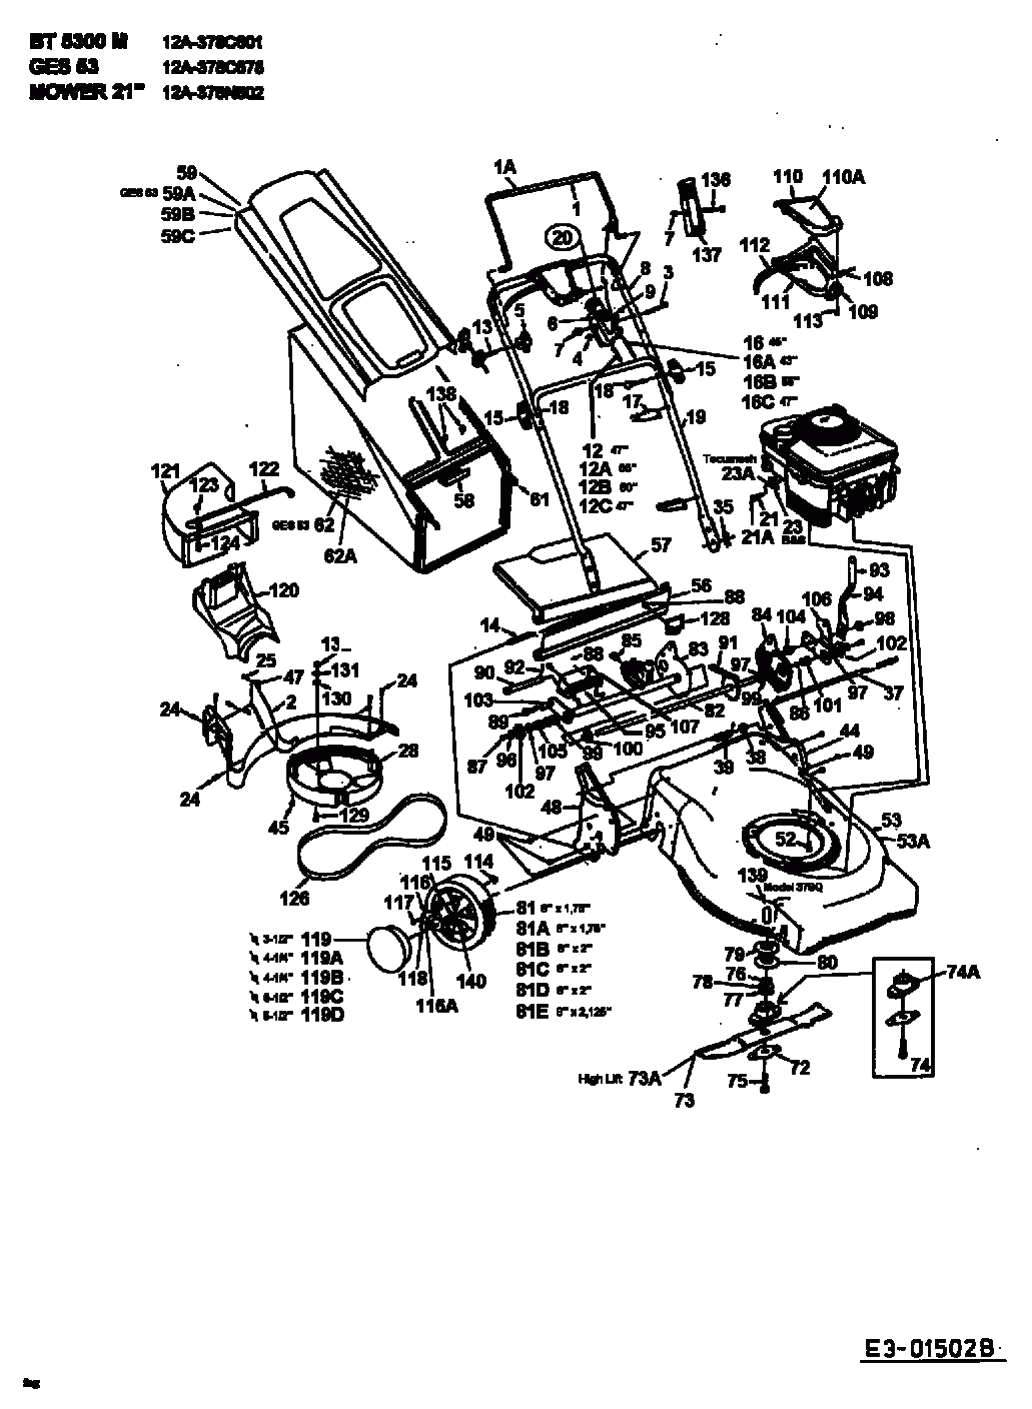 MTD Артикул 12AE378O678 (год выпуска 1998). Основная деталировка